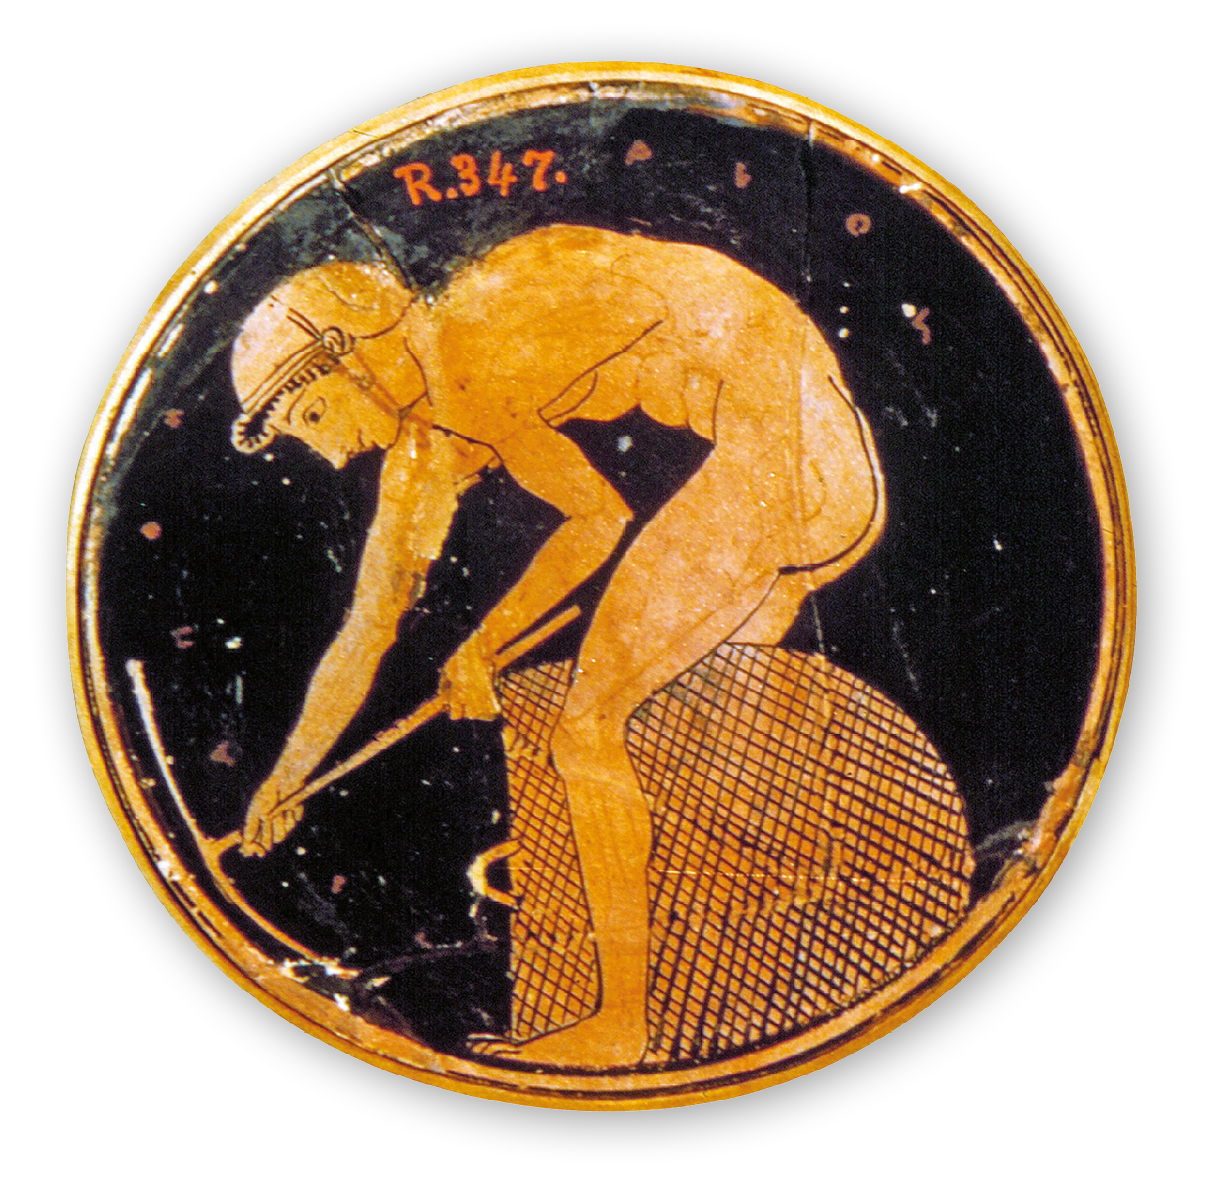 Fotografia. Artefato de cerâmica de formato circular. Na superfície o desenho dourado de um homem nu, usando capacete. Ele está de lado, com o corpo inclinado para frente, manuseando uma picareta. Ao lado de suas pernas, um grande cesto.